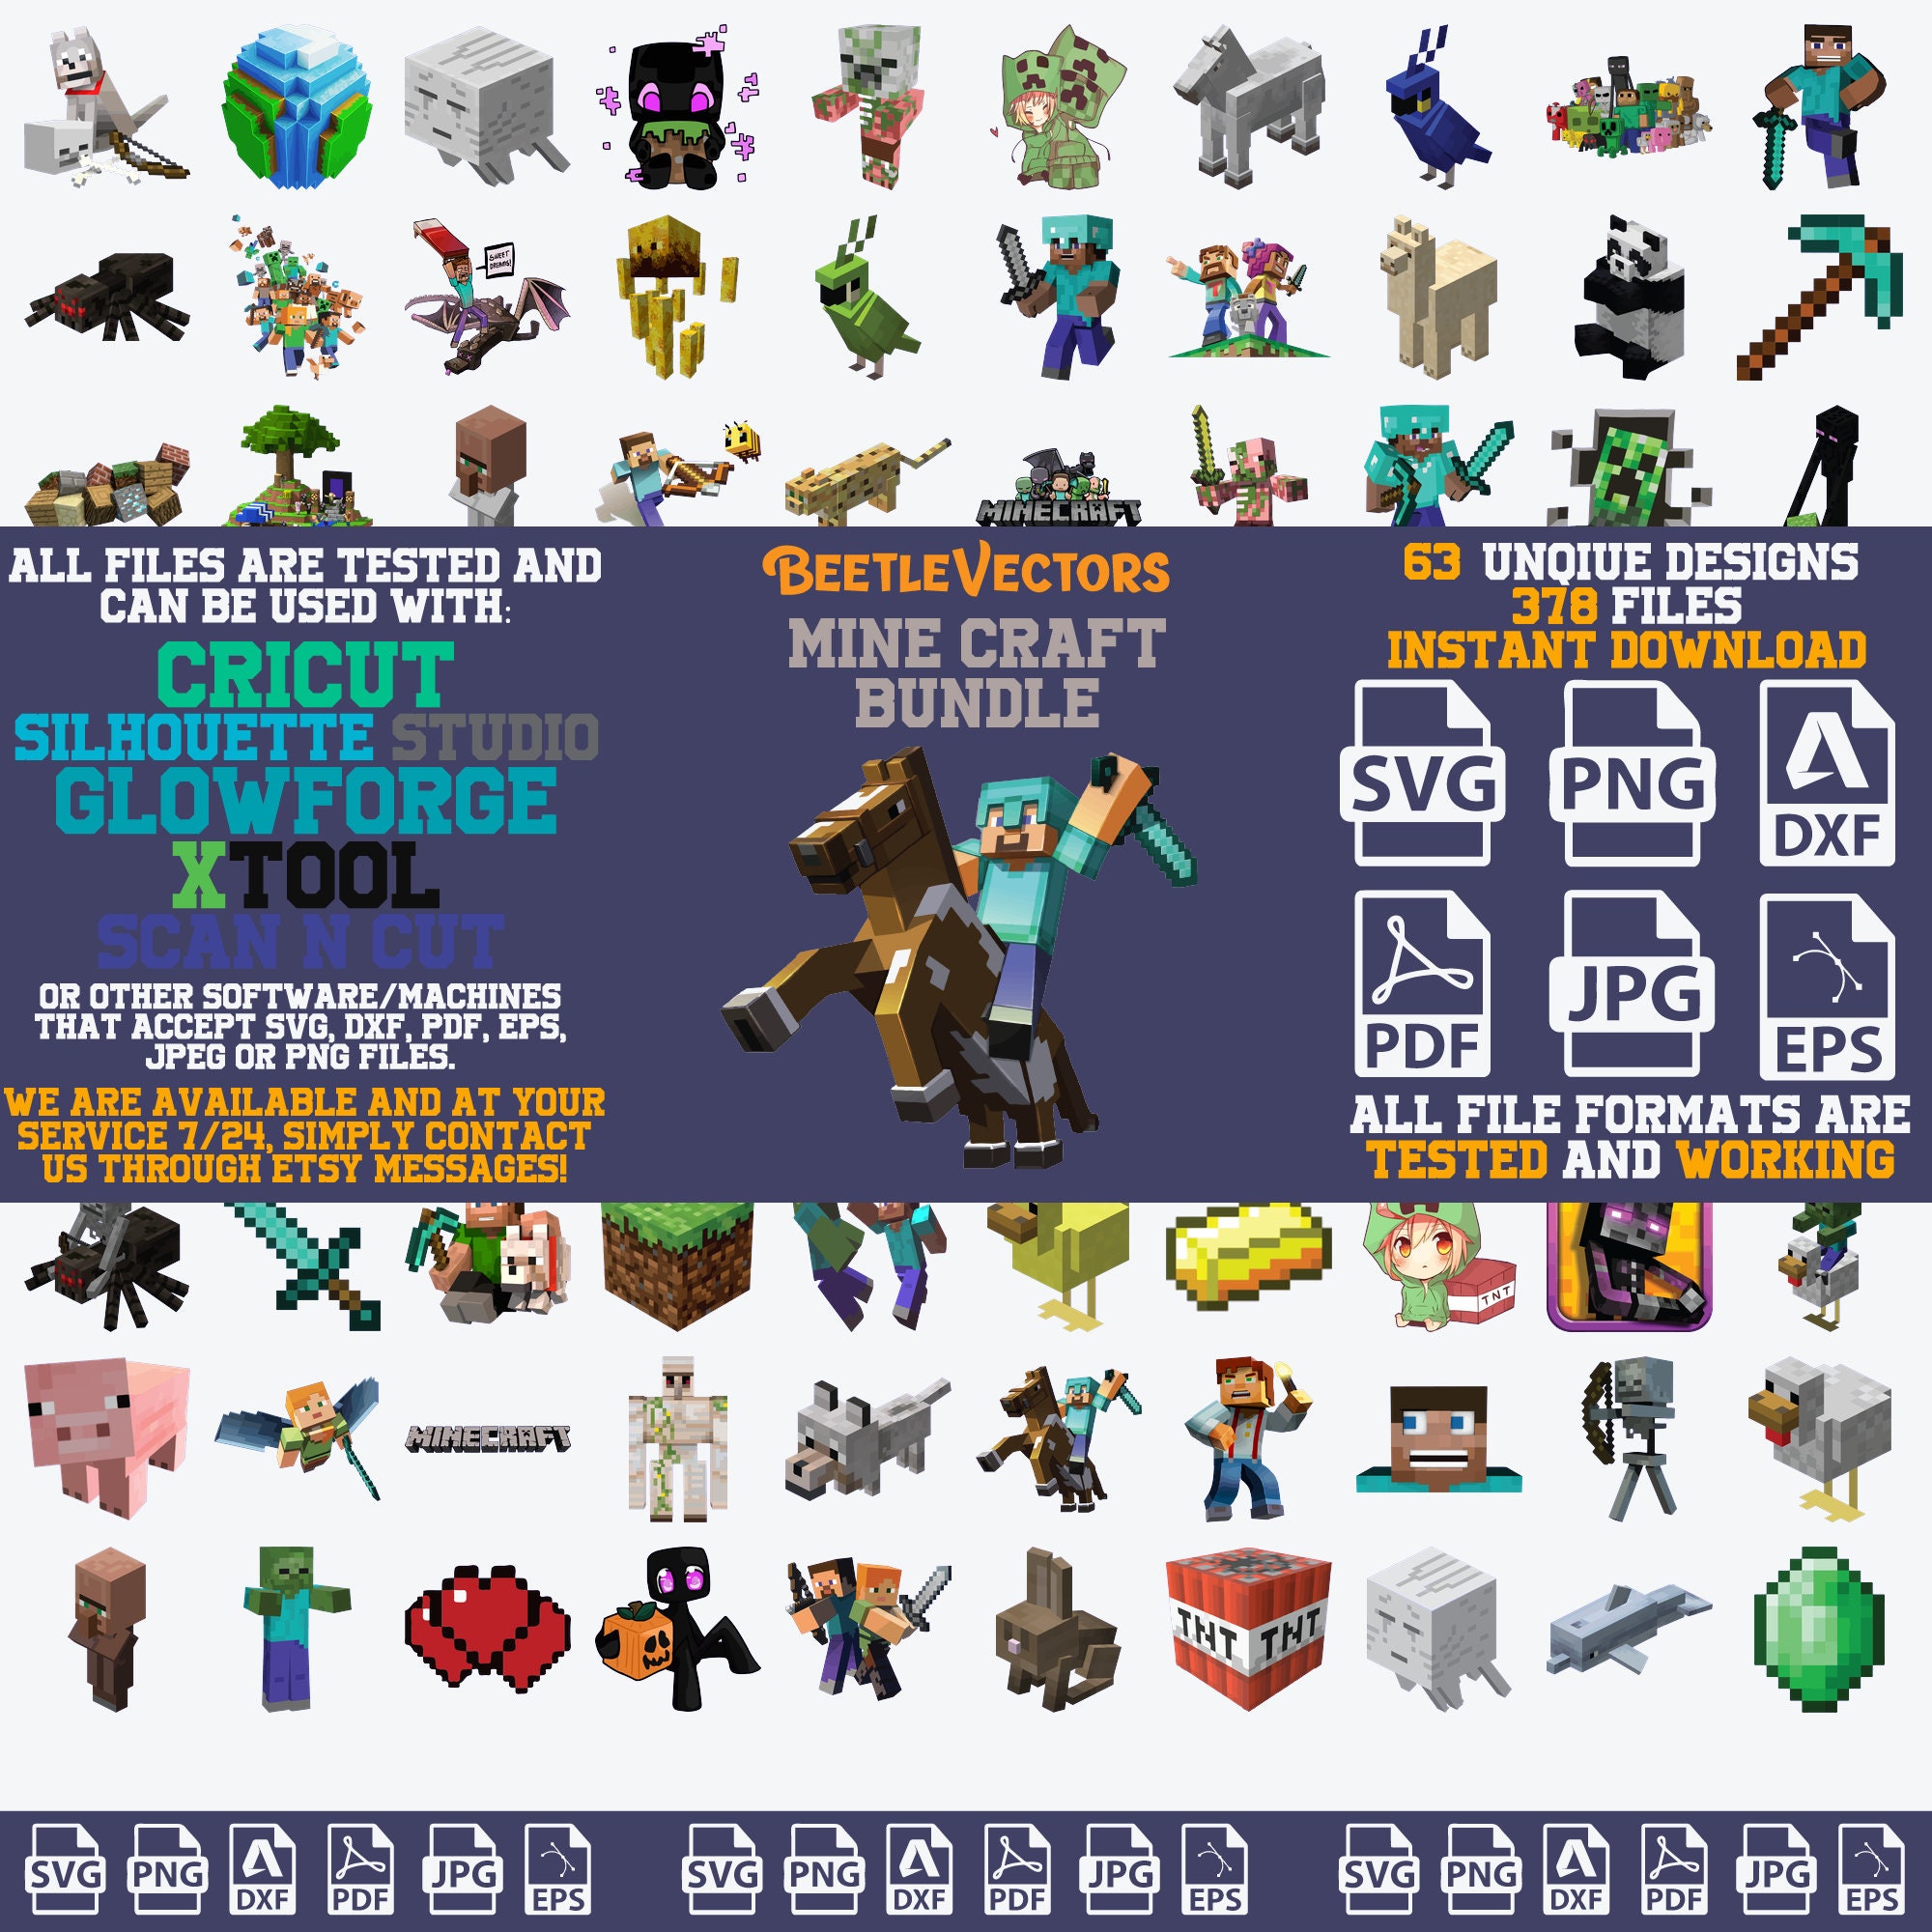 Creeper Minecraft SVG - Inspire Uplift